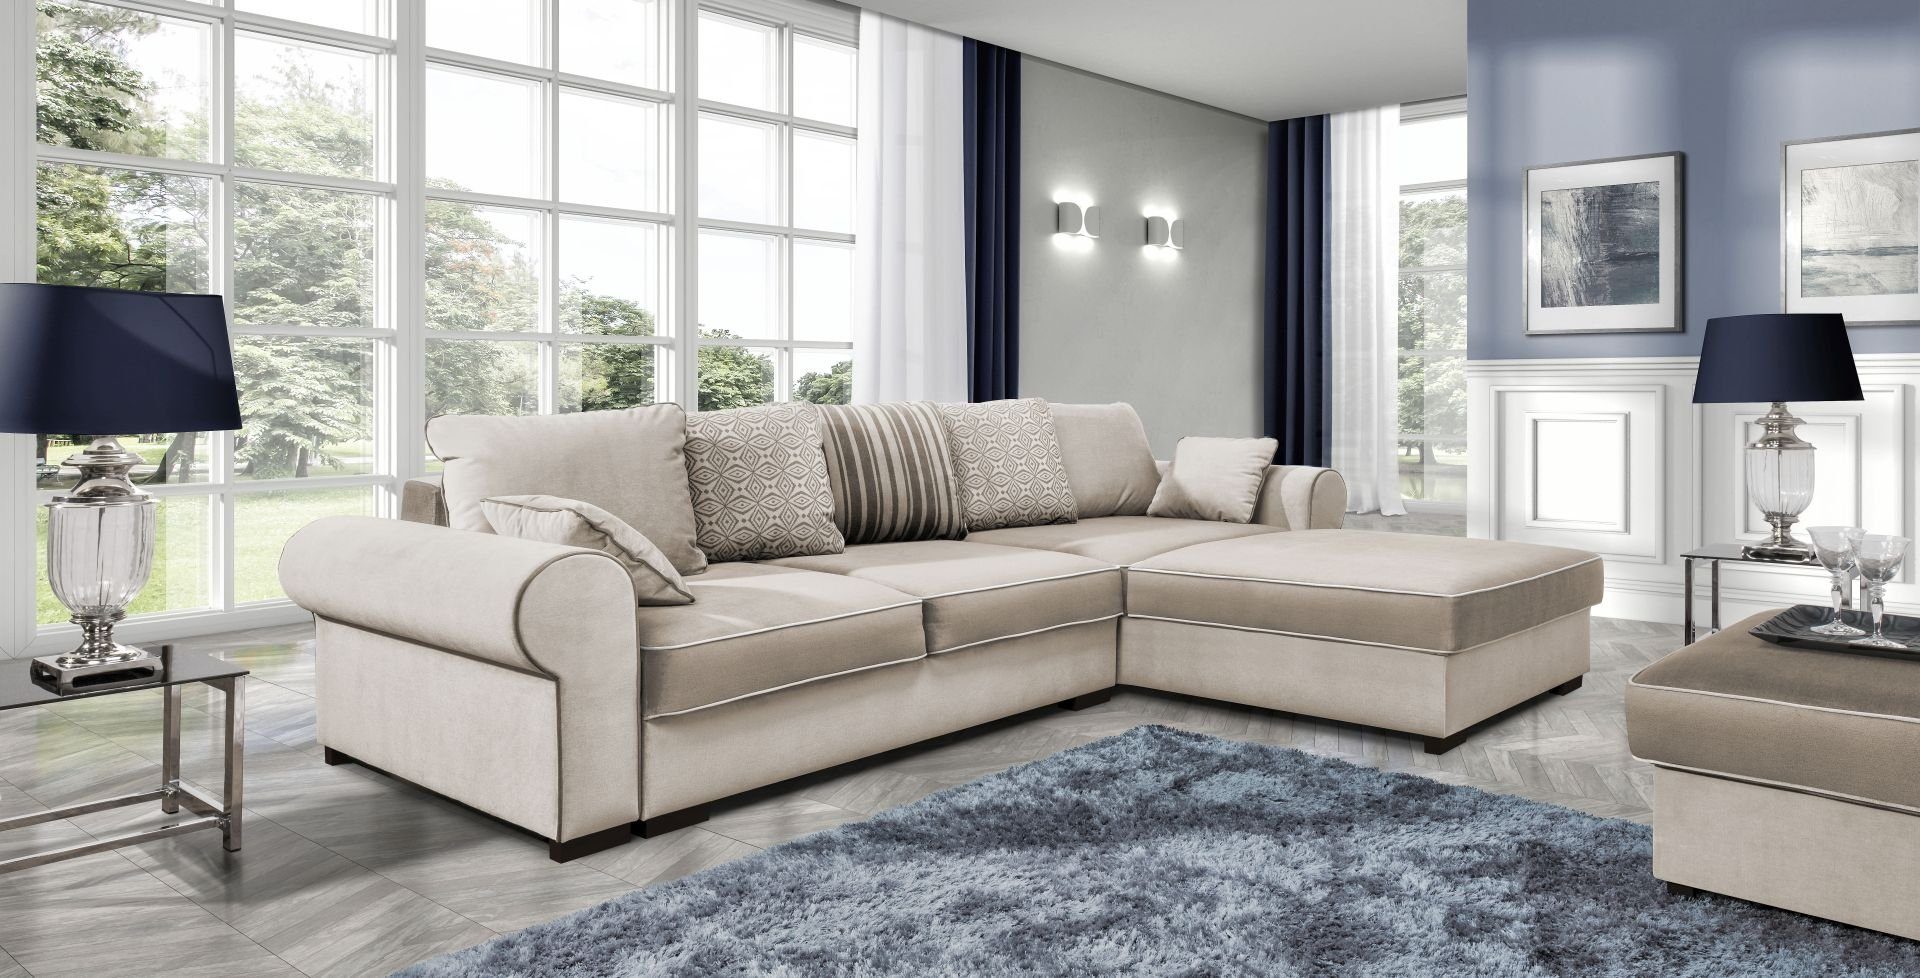 JVmoebel Ecksofa, Stoff L-Form Couch Wohnlandschaft Ecksofa Garnitur Modern Design Sofa Beige